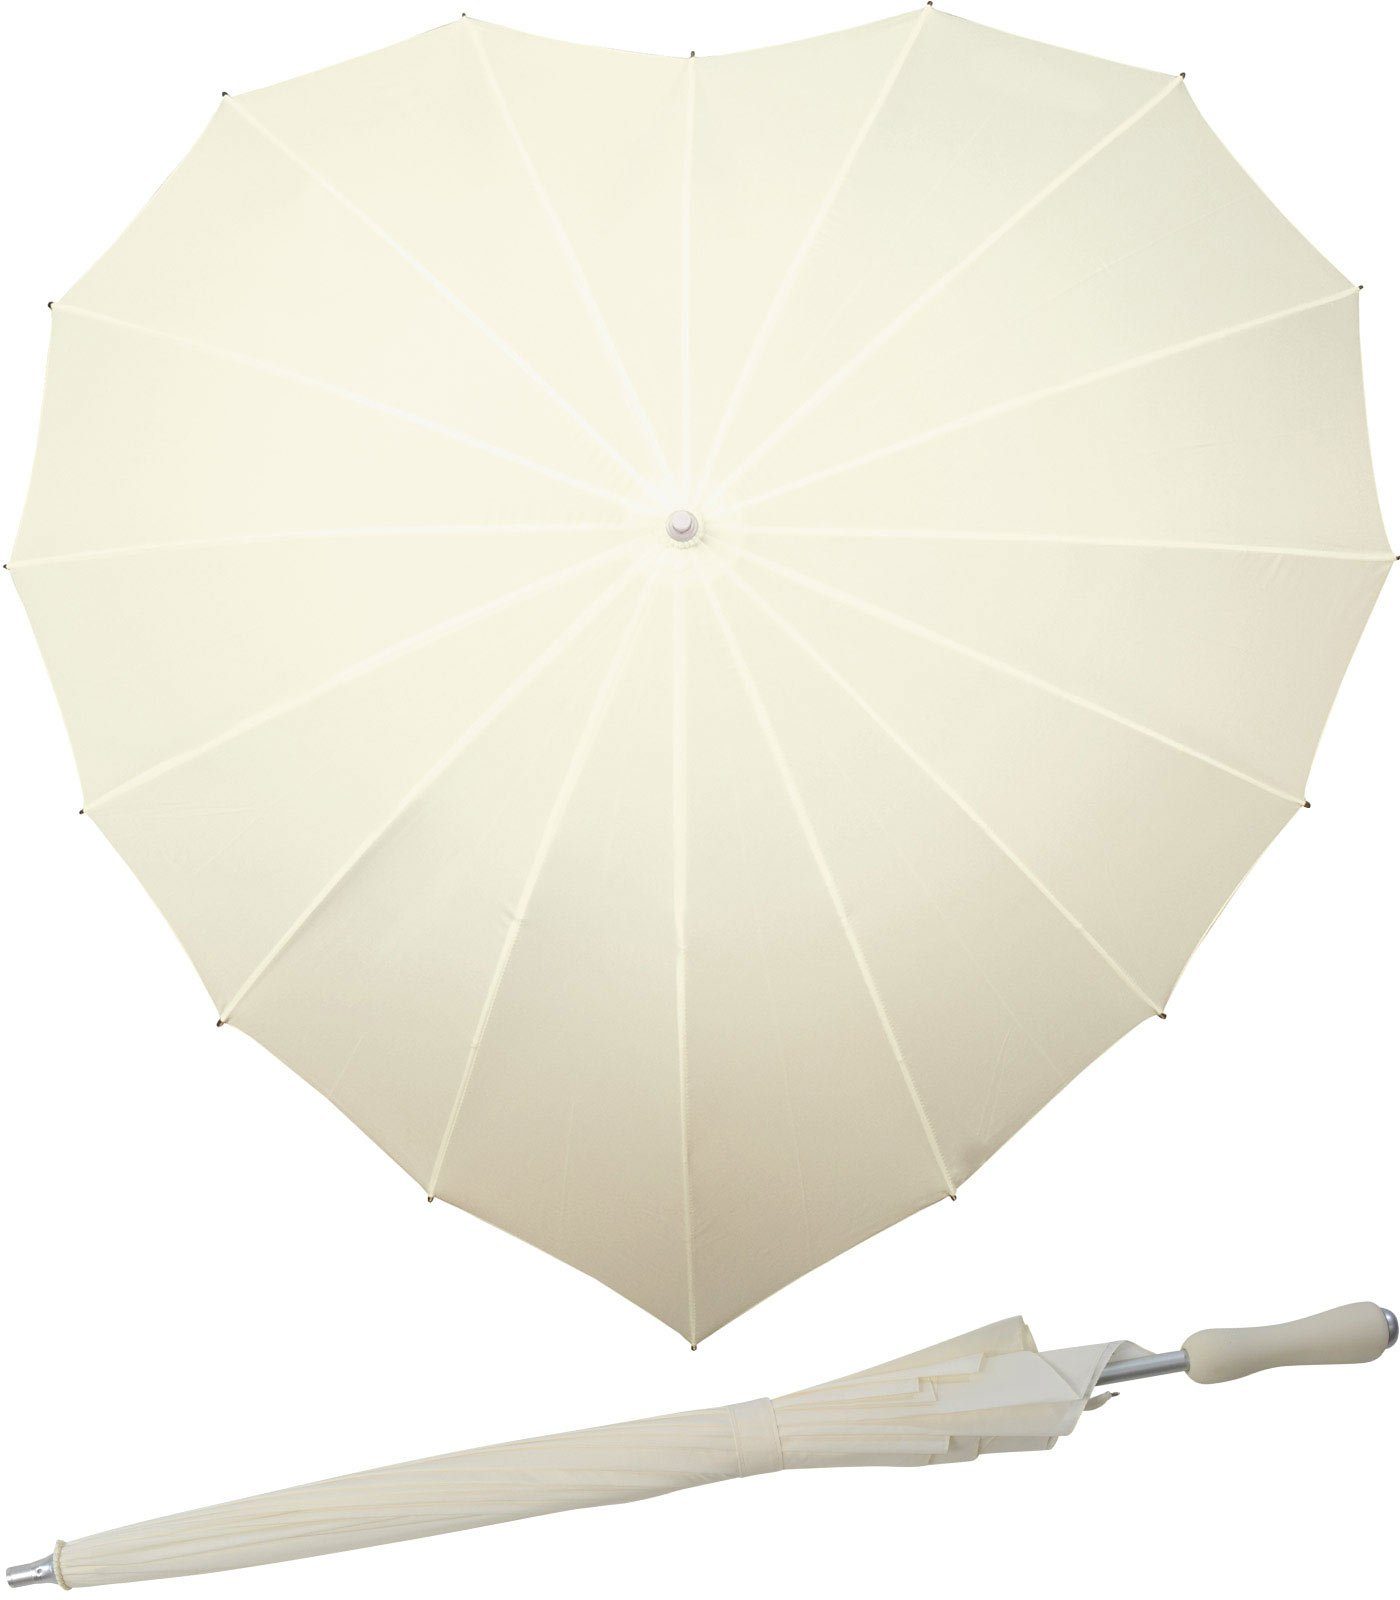 Impliva Langregenschirm Regenschirm 16-teilig in Herzform Hochzeitsschirm, herzförmiger Regenschirm creme